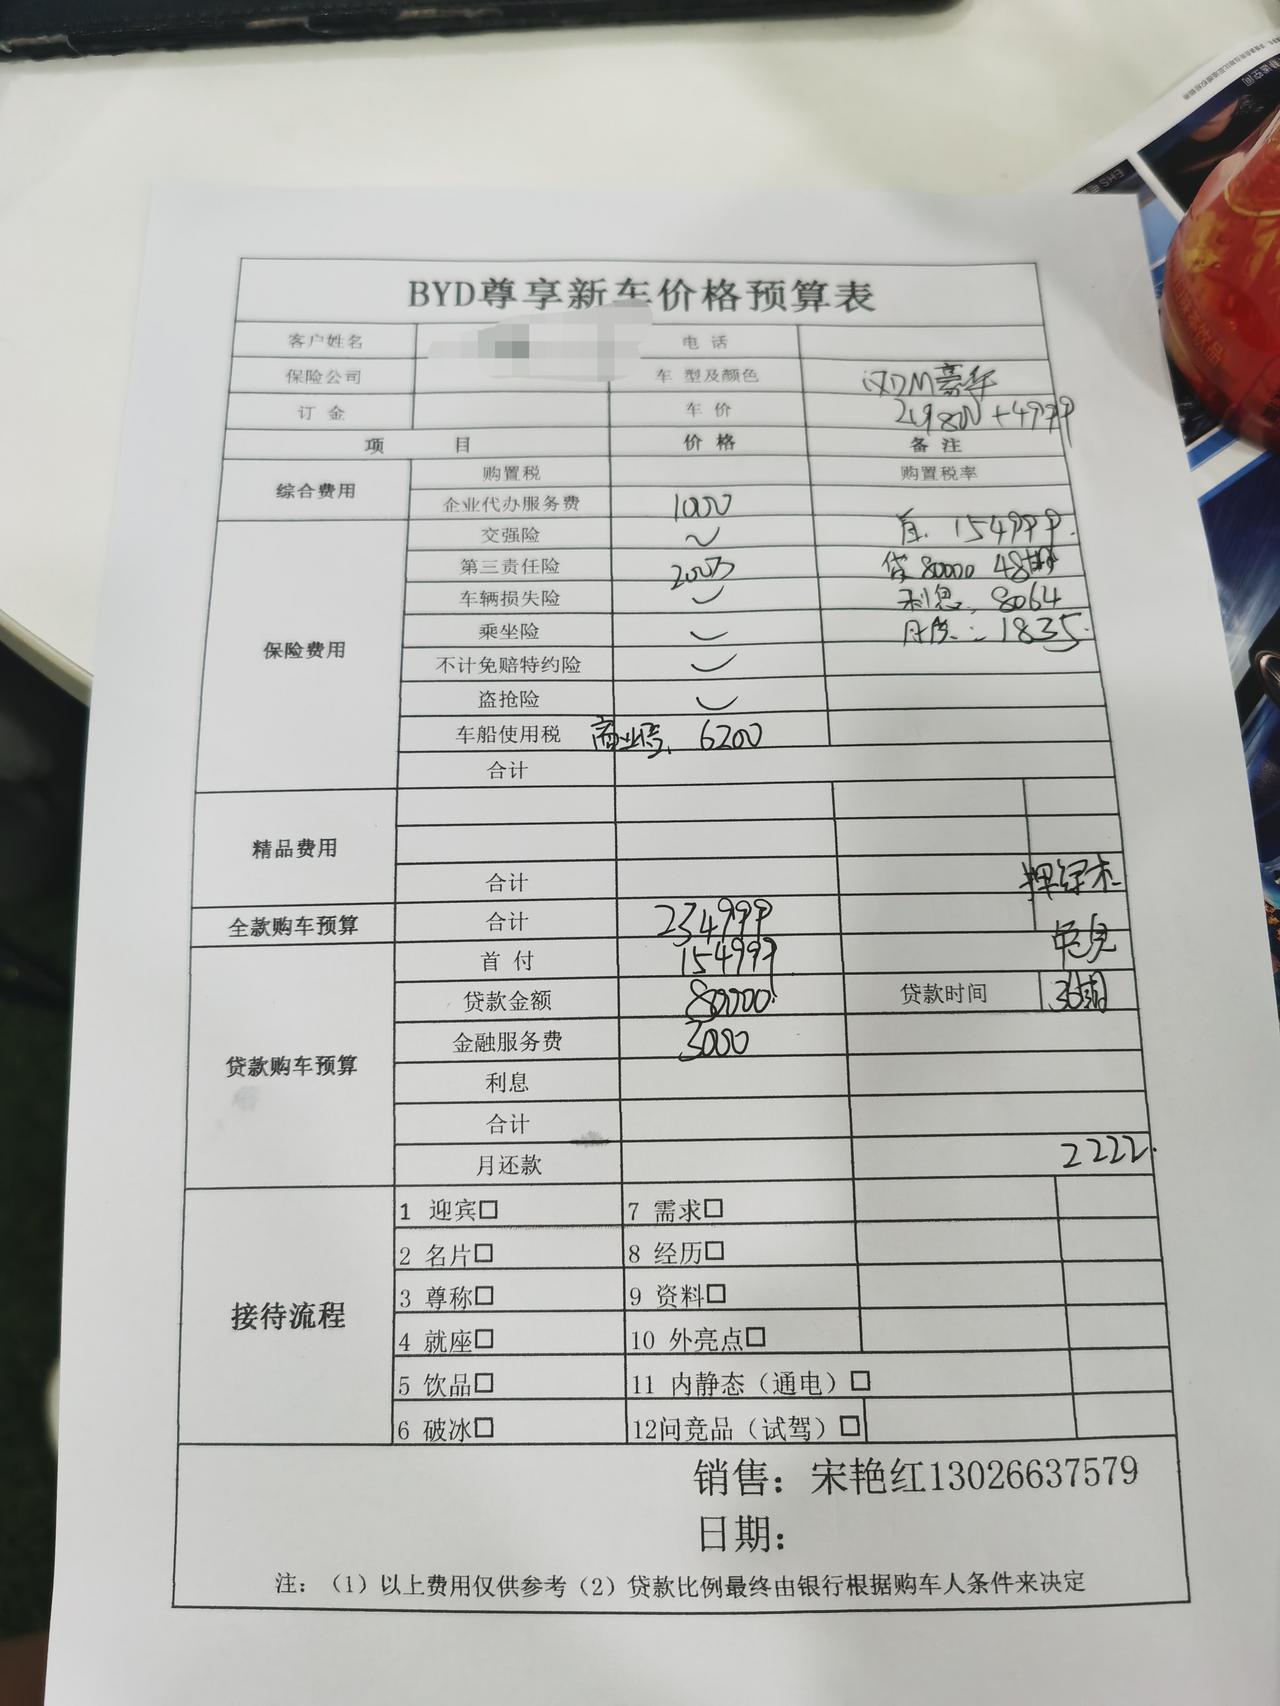 比亚迪汉DM 深圳汉dm豪华版目前落地多少钱 各位老板有没有七月份订车的 最近想入手 但是七月没有新能源补贴了 很难受 